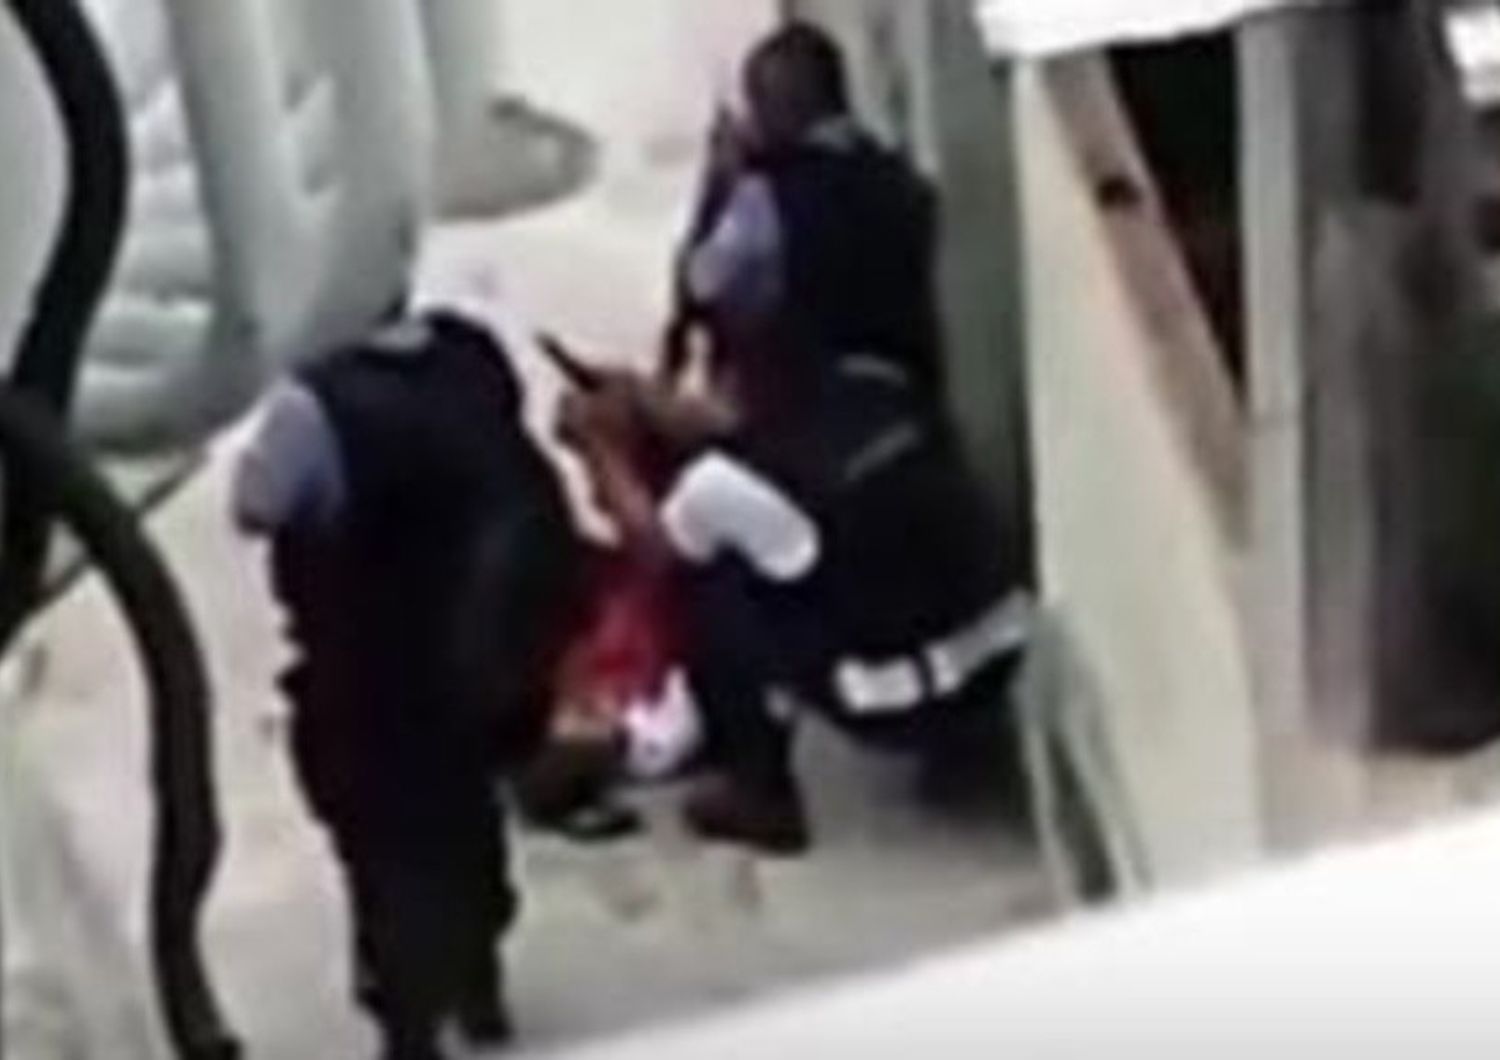 Brasile: pistola in mano a ragazzo ucciso, video incastra polizia - Video